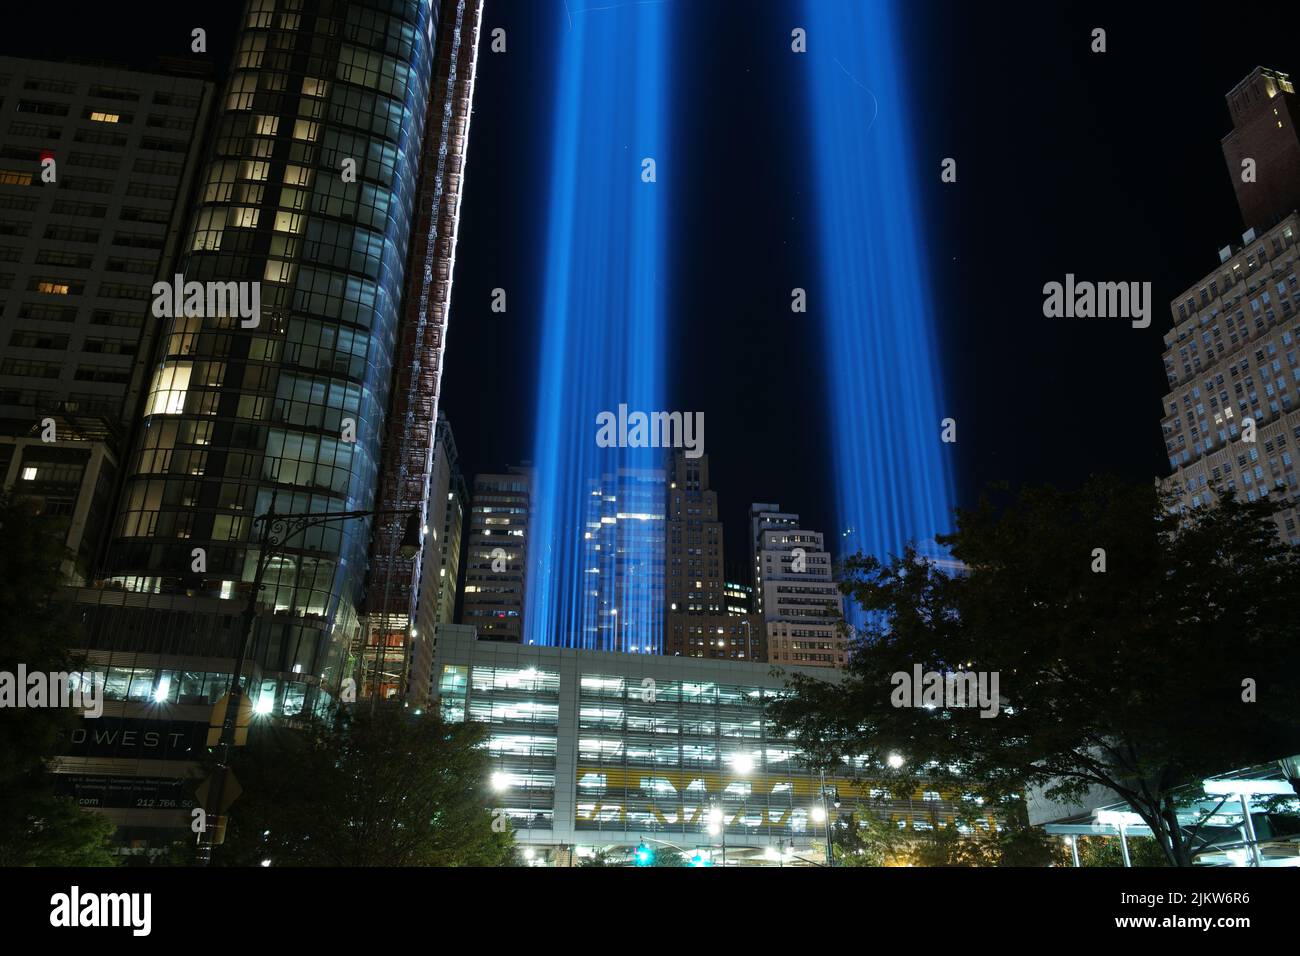 Uno scenario ipnotico dei grattacieli di New York con luci al neon luminose di notte Foto Stock